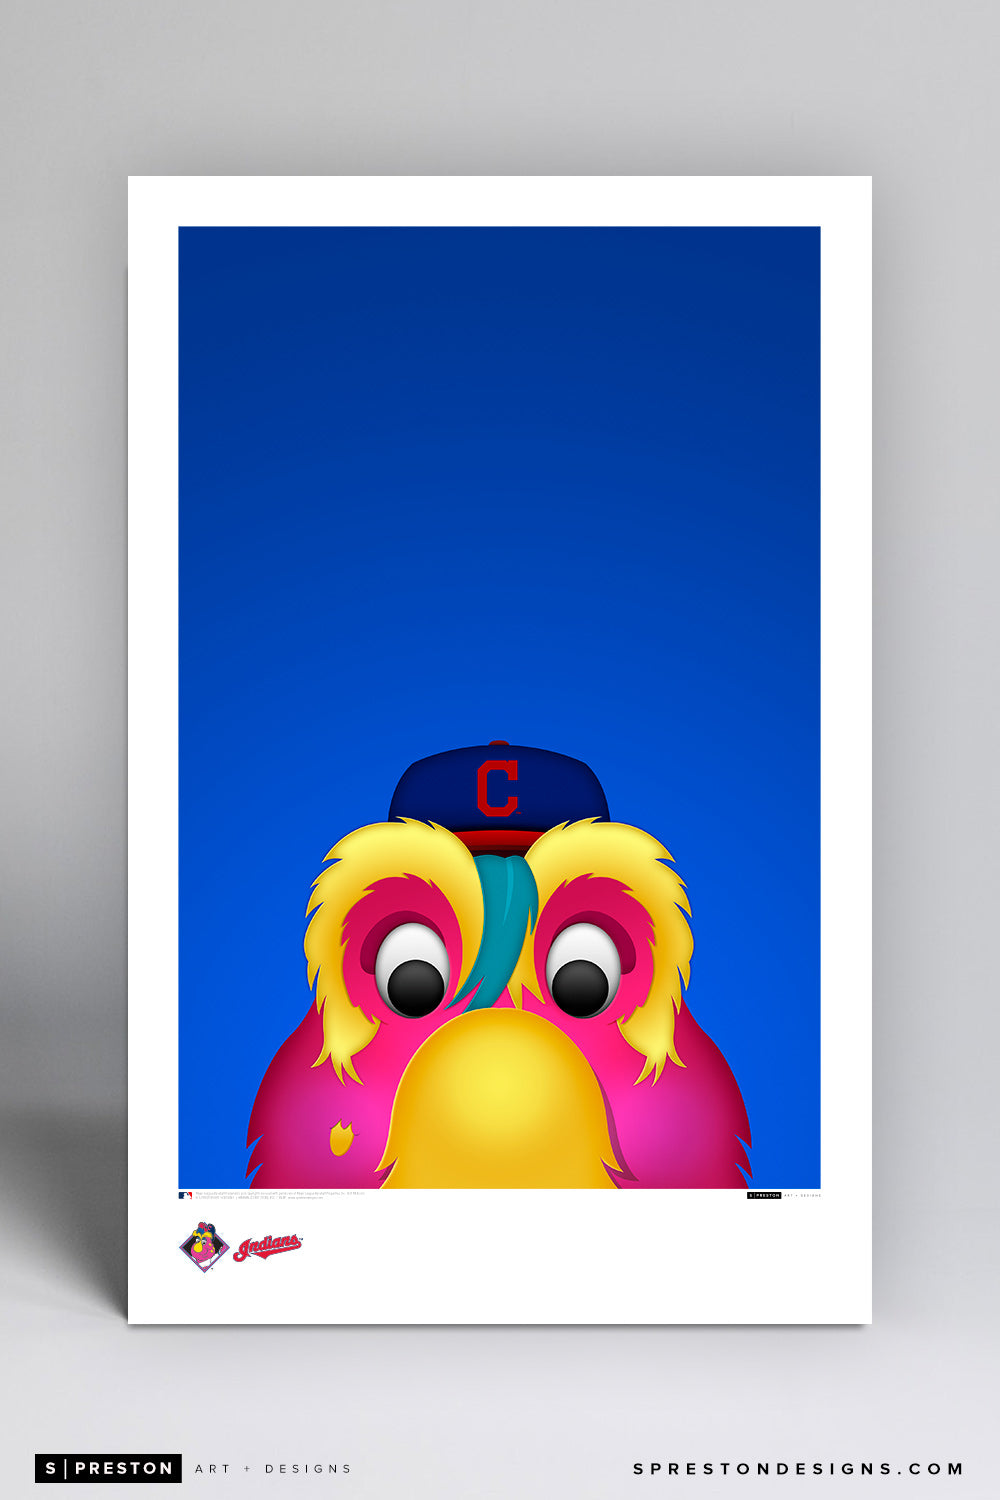 Minimalist Slider Poster Print Cleveland Indians - S Preston